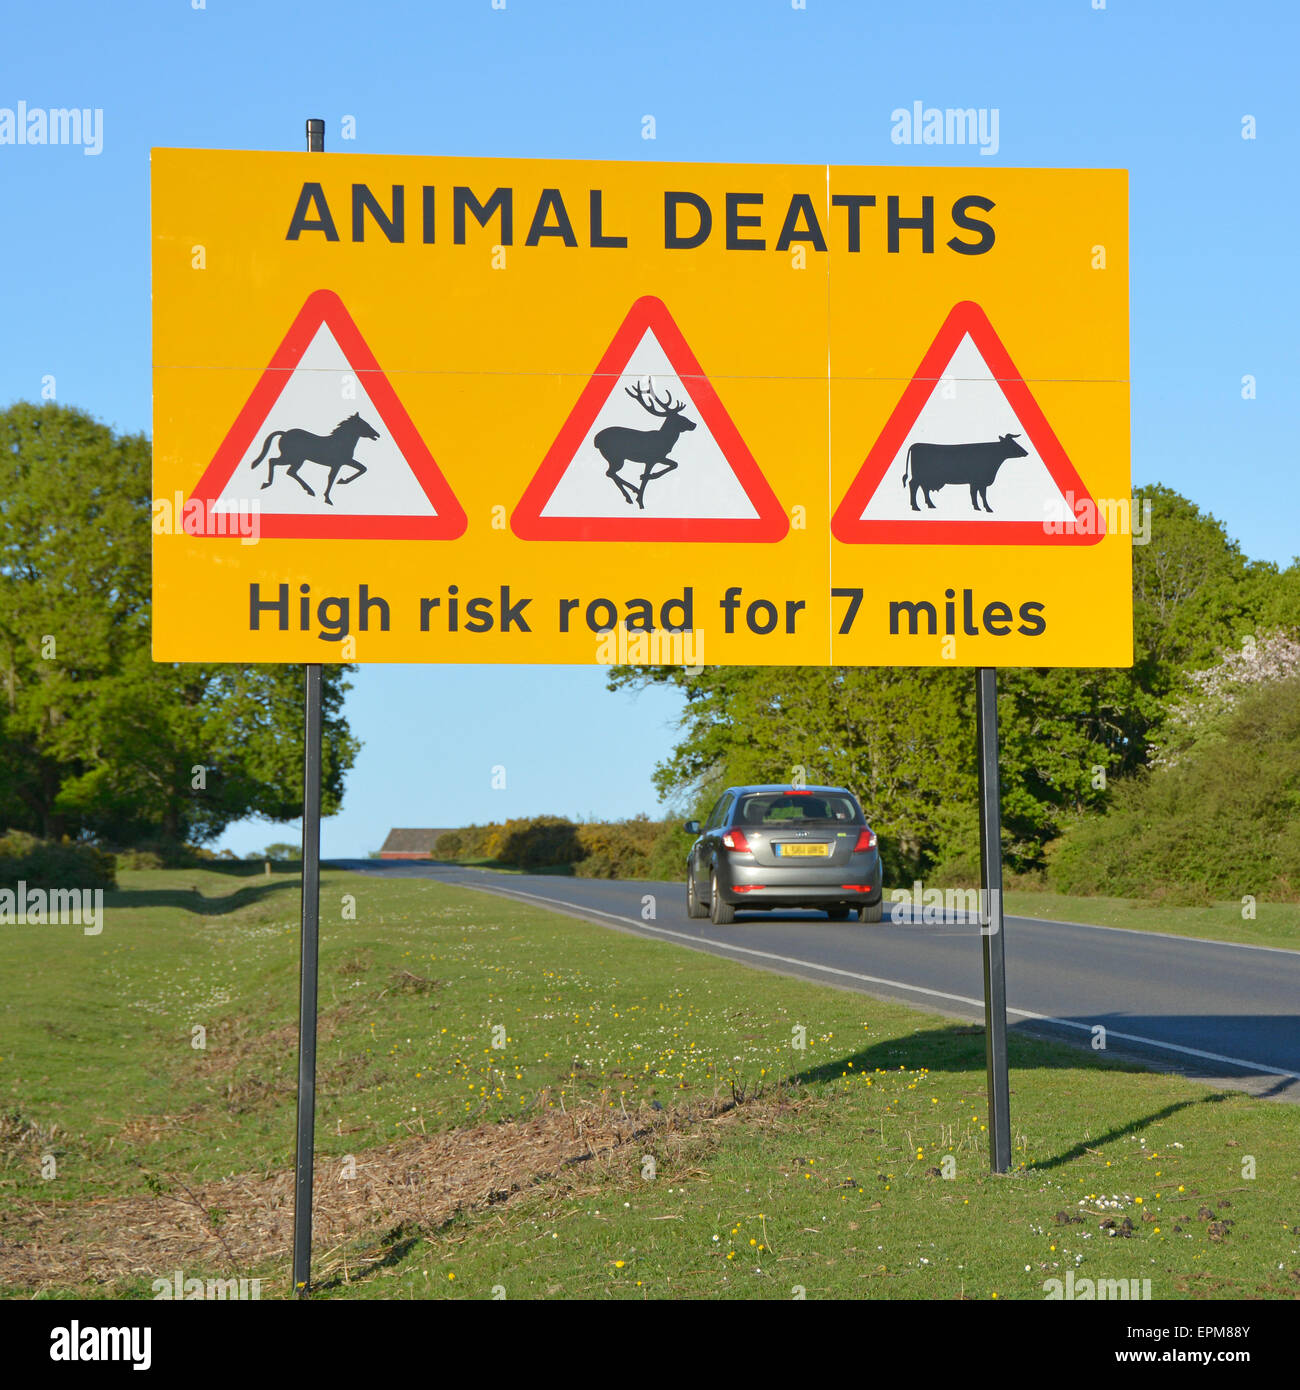 Straßenschild Warnung Autofahrer von Tiersterben zu frei Roaming Ponys Hirsche & Rinder auf Hochrisiko-Straße in New Forest National Park Hampshire England Großbritannien Stockfoto